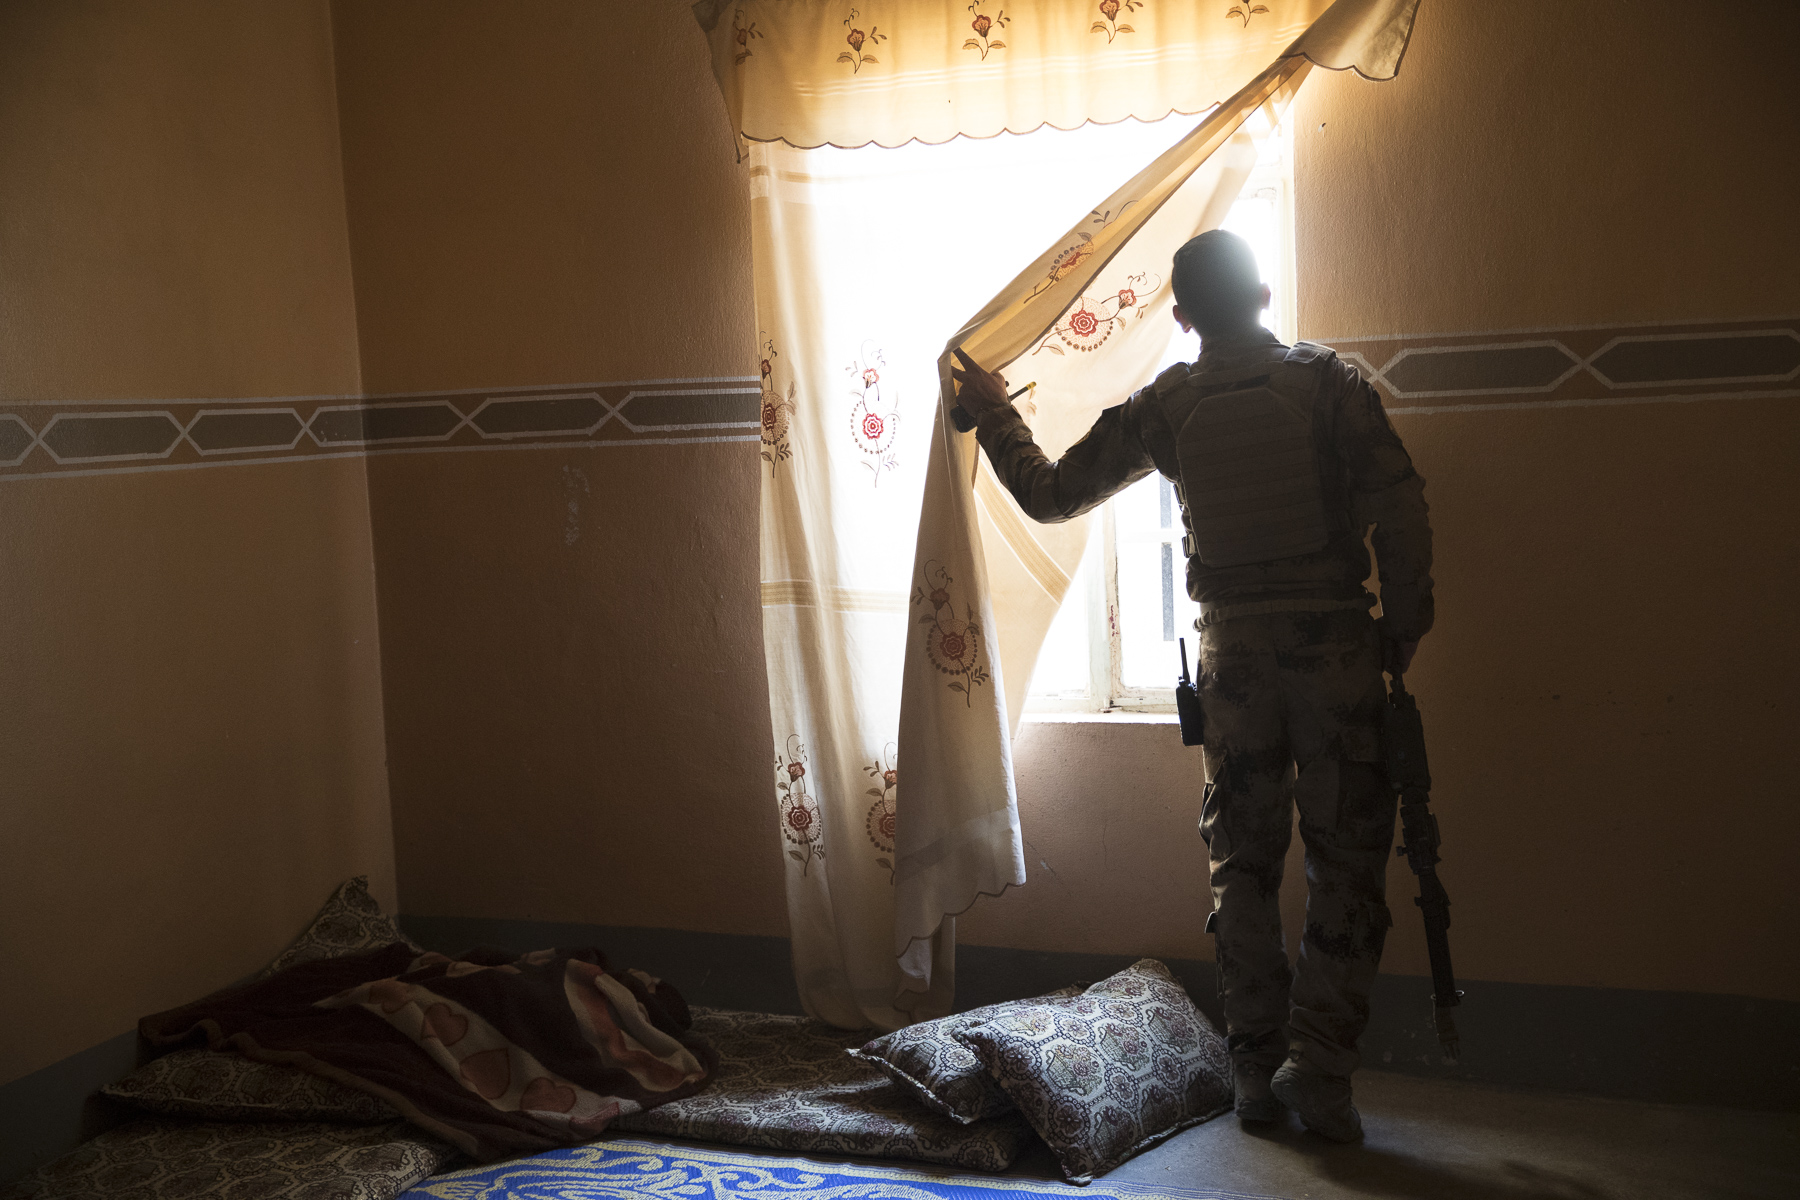 Fouilles des maisons à la recherche de combattants de Daech